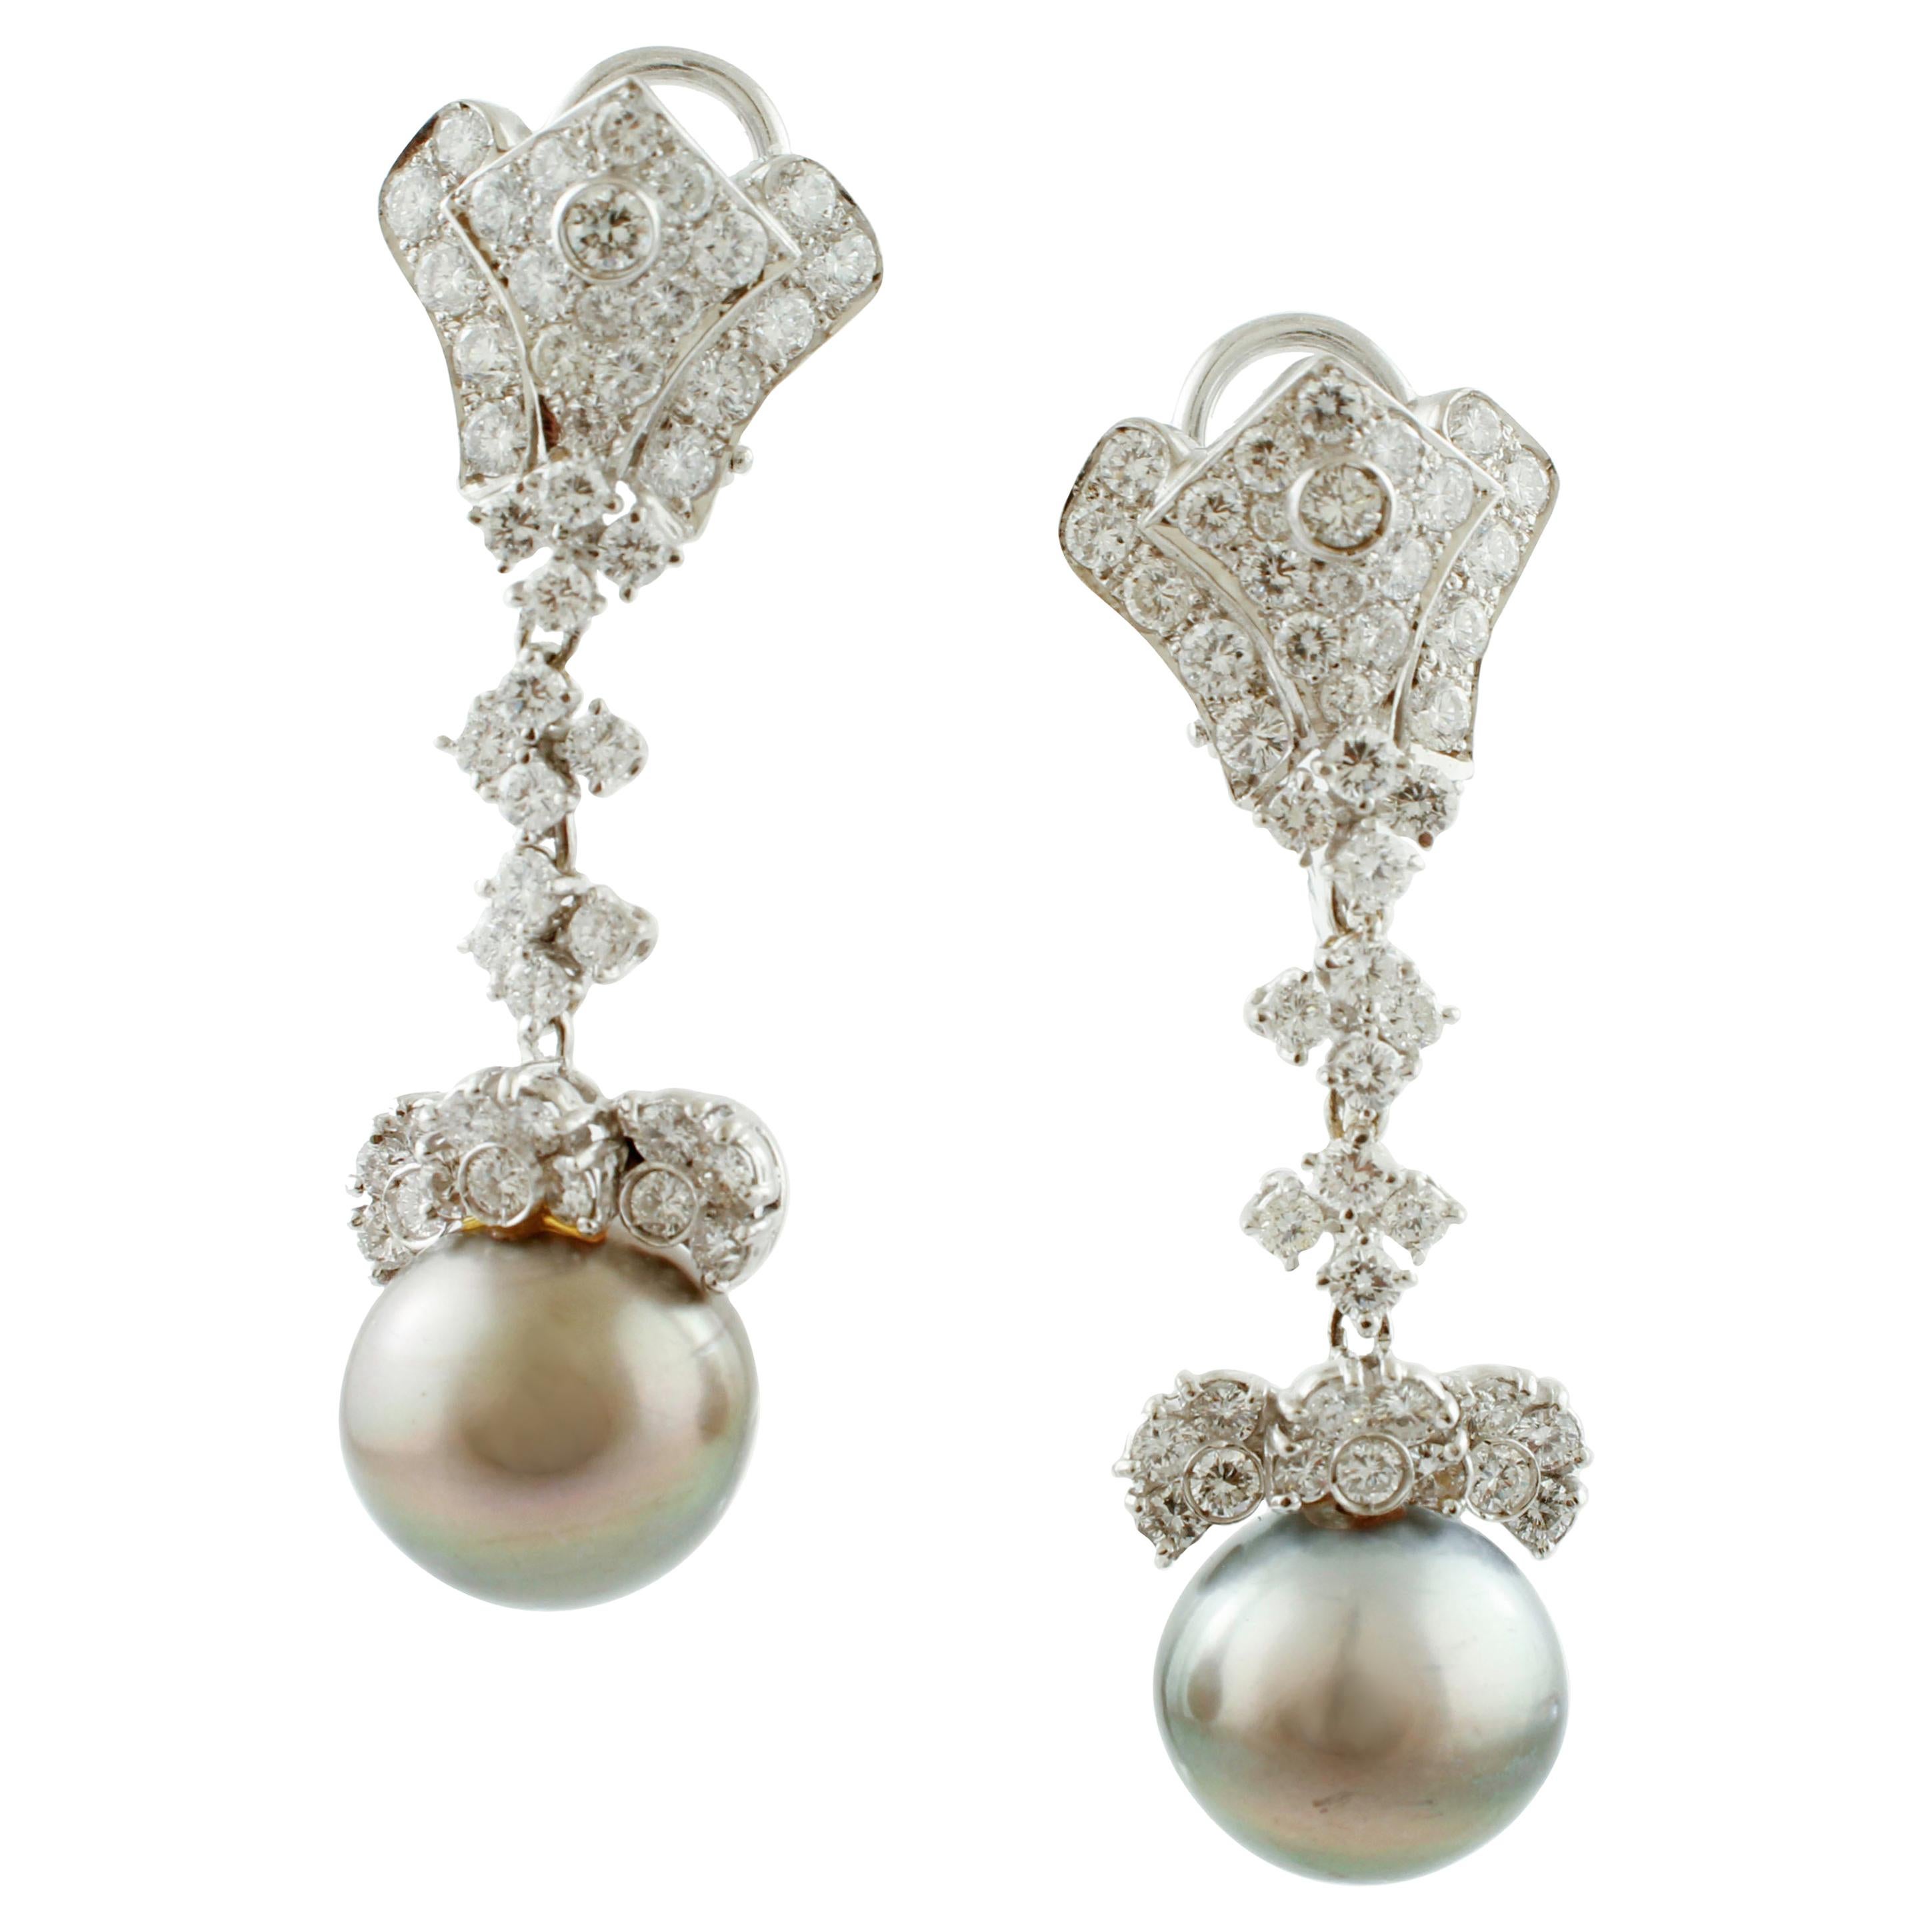 Diamanti bianchi, perle dei mari del sud da 40 carati, orecchini a clip/goccia in oro 18 carati